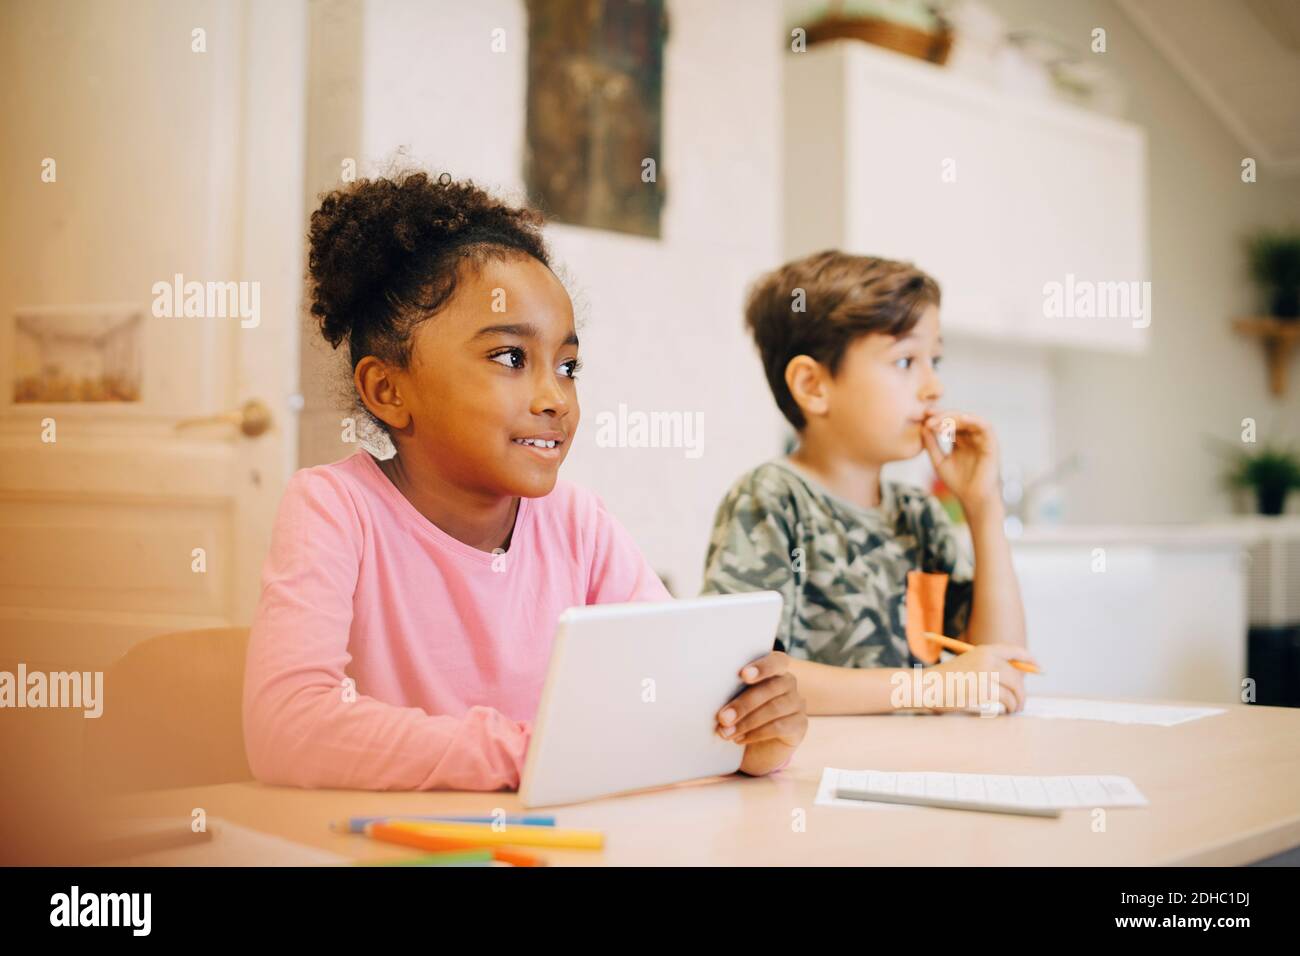 Junge lernen durch digitale Tablet, während Sie mit einem Freund sitzen Schulungsraum Stockfoto